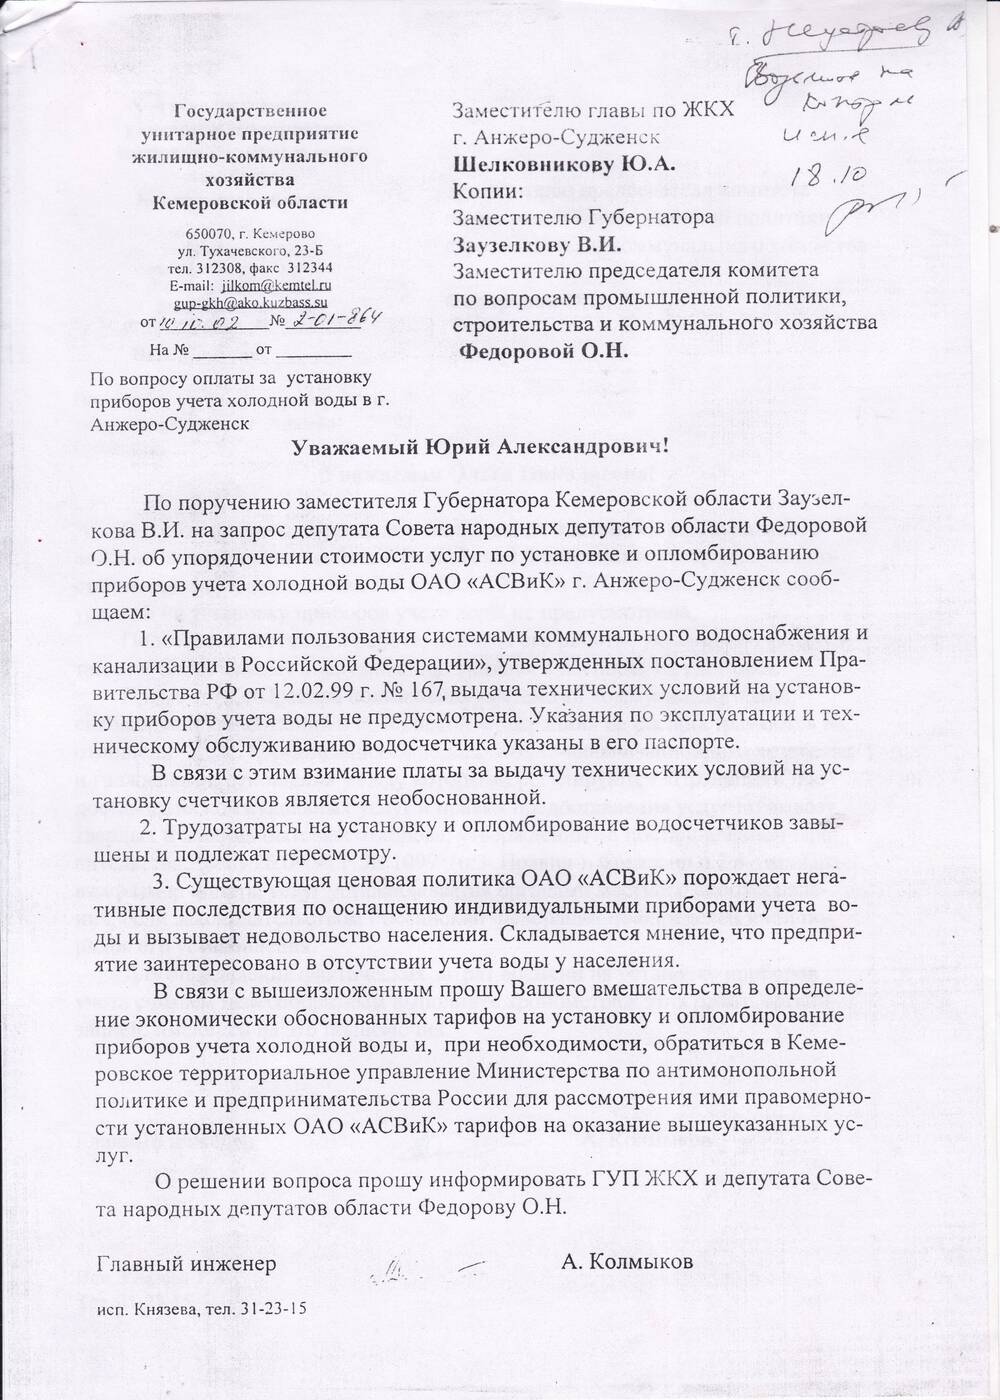 Ответ на депутатский запрос Федоровой О.Н. главного инженера ГУБ ЖКХ Кемеровсокй области Колмыкова